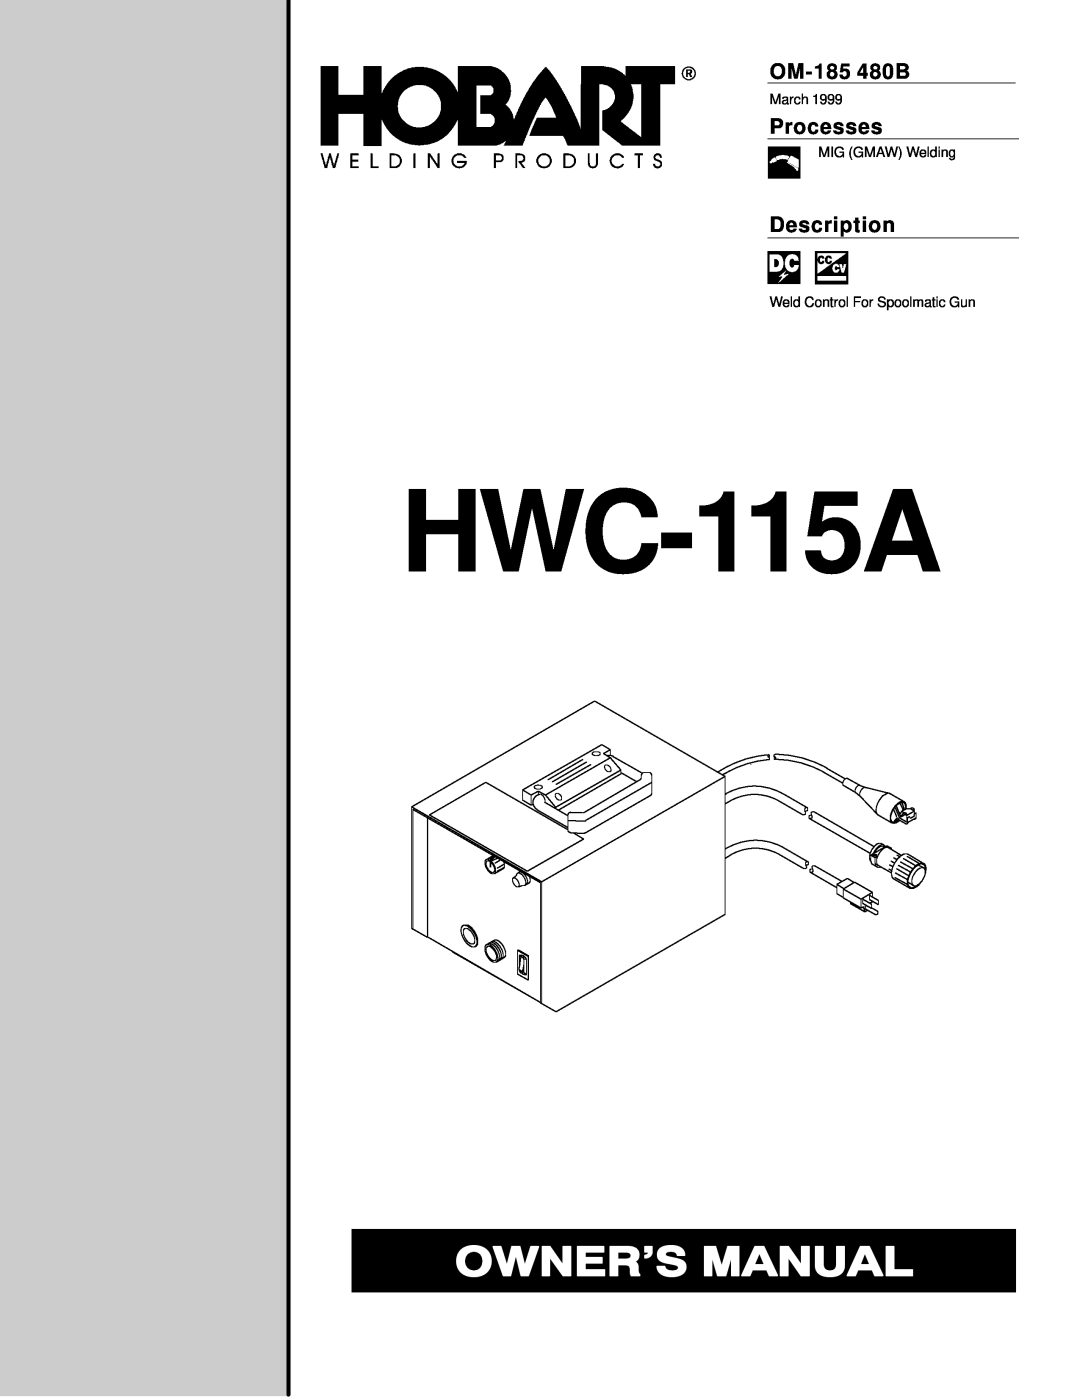 Hobart Welding Products HWC-115A manual OM-185 480B, Processes, Description 